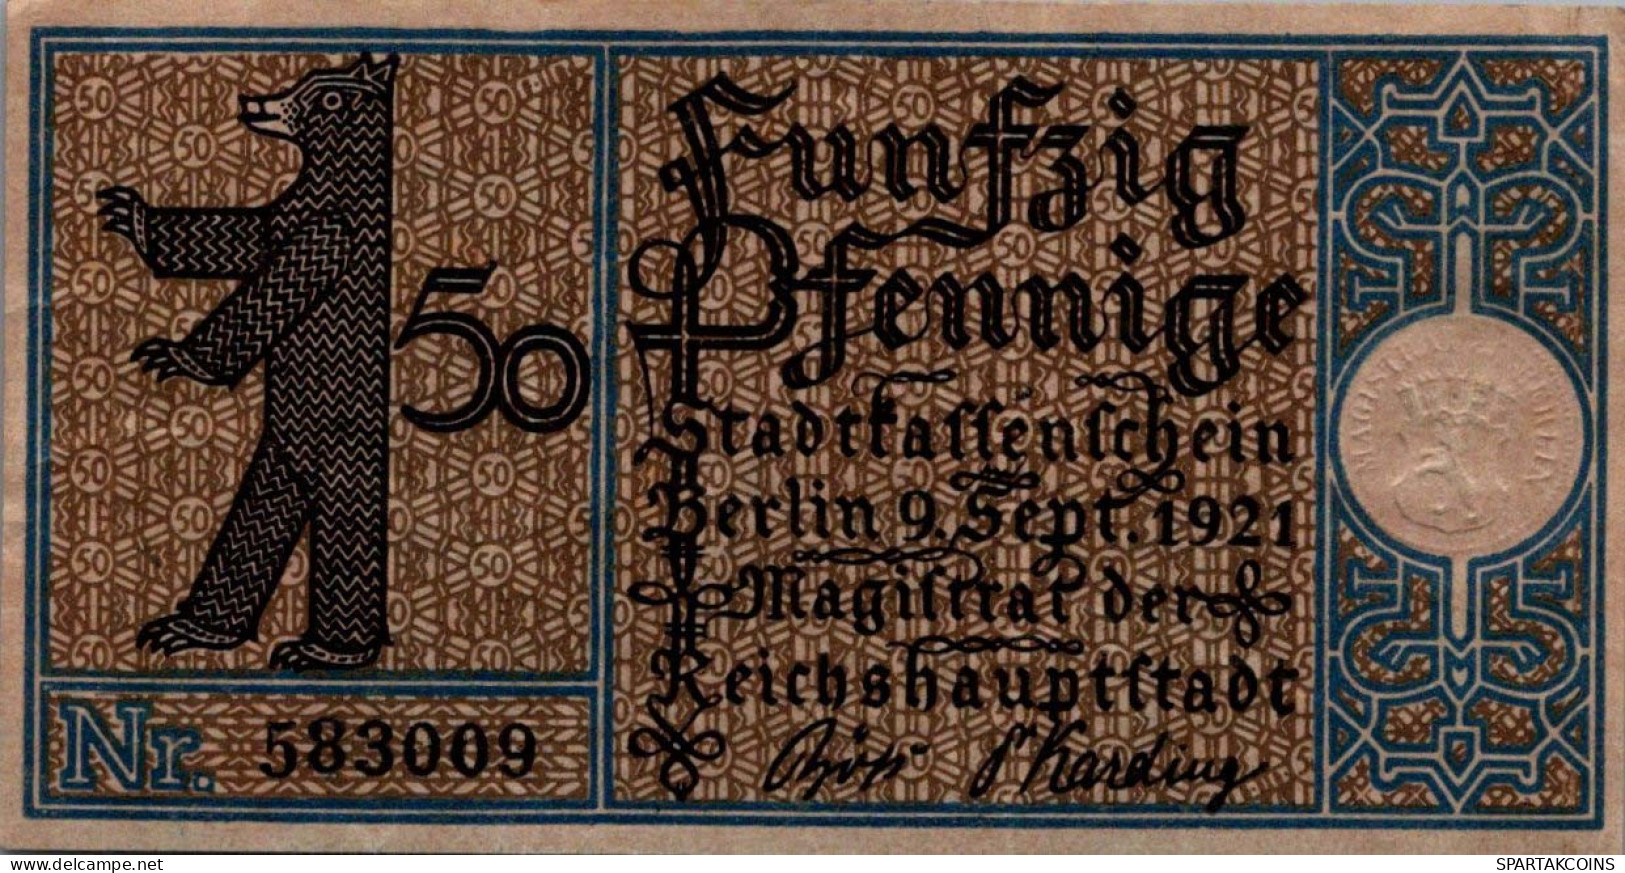 50 PFENNIG 1921 Stadt BERLIN UNC DEUTSCHLAND Notgeld Banknote #PH747 - [11] Emissions Locales